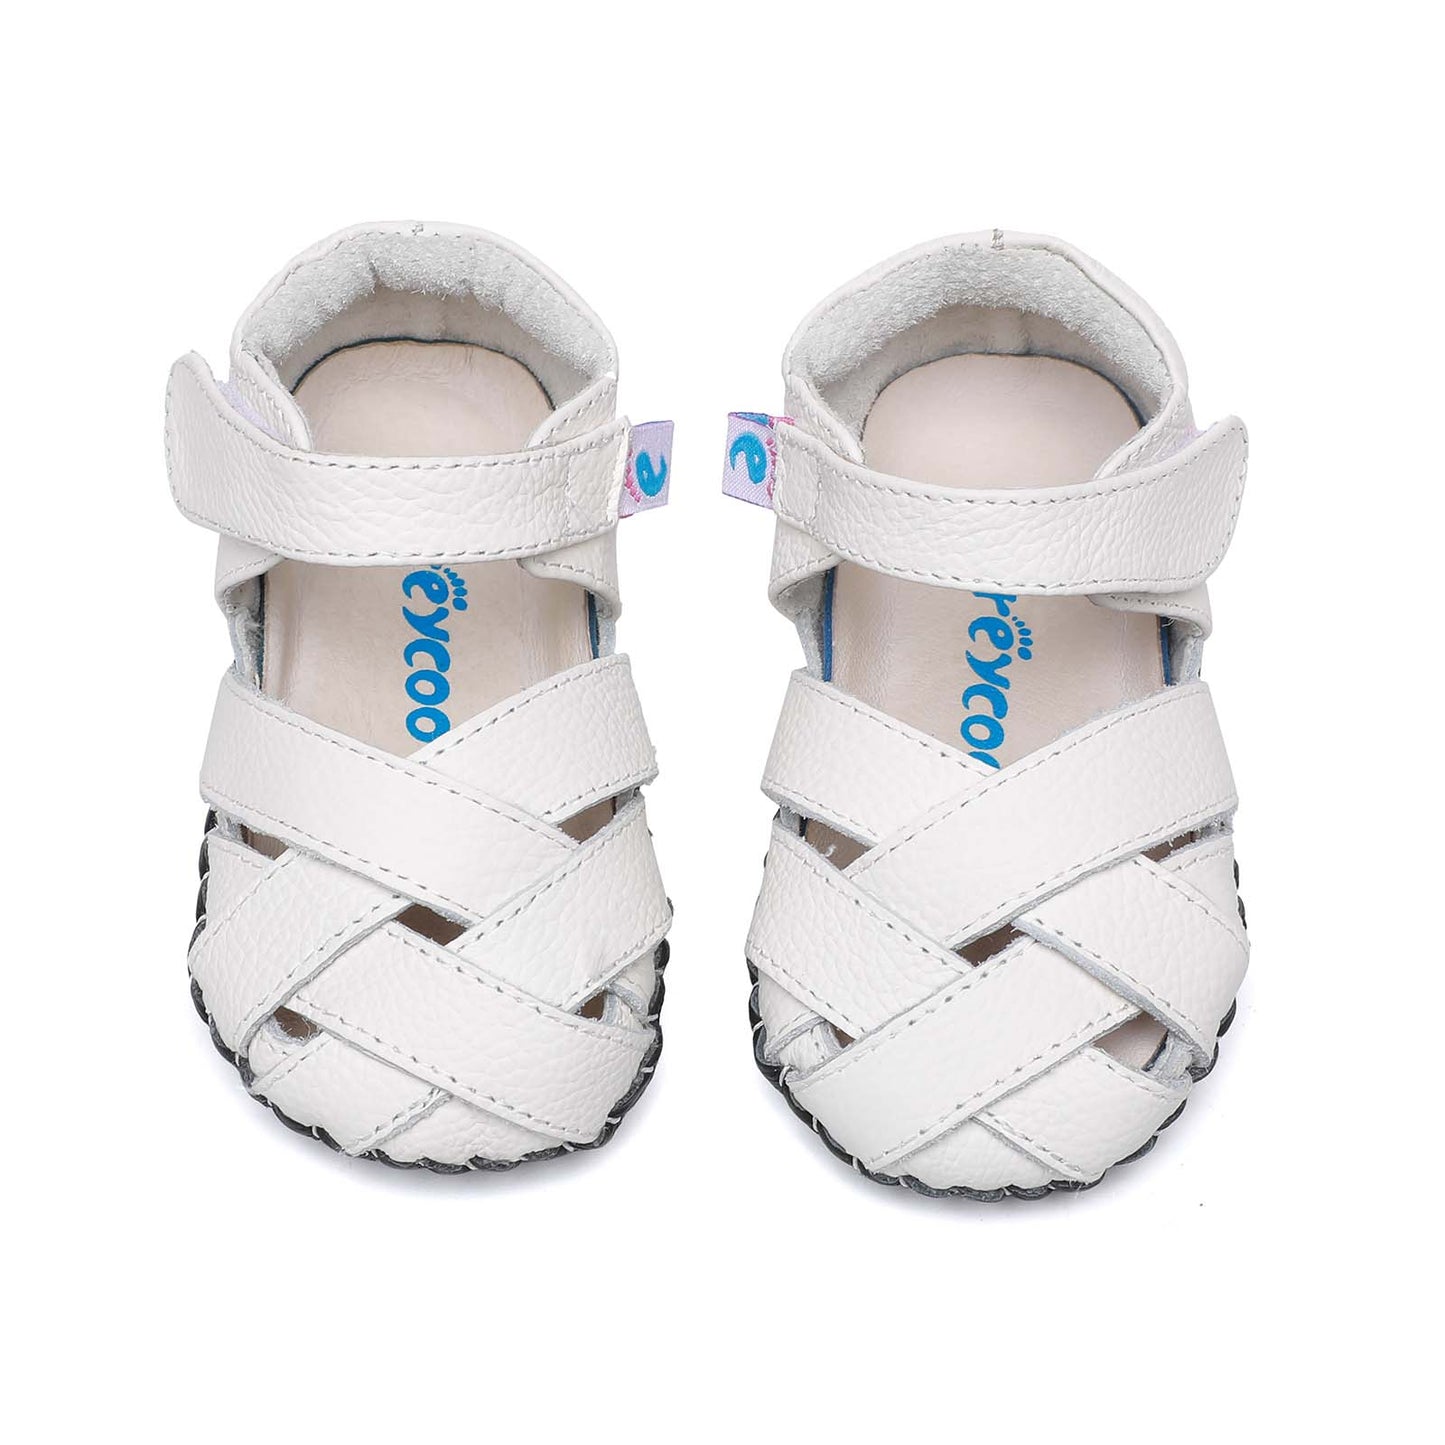 Freycoo - White Clarice Infant Shoes